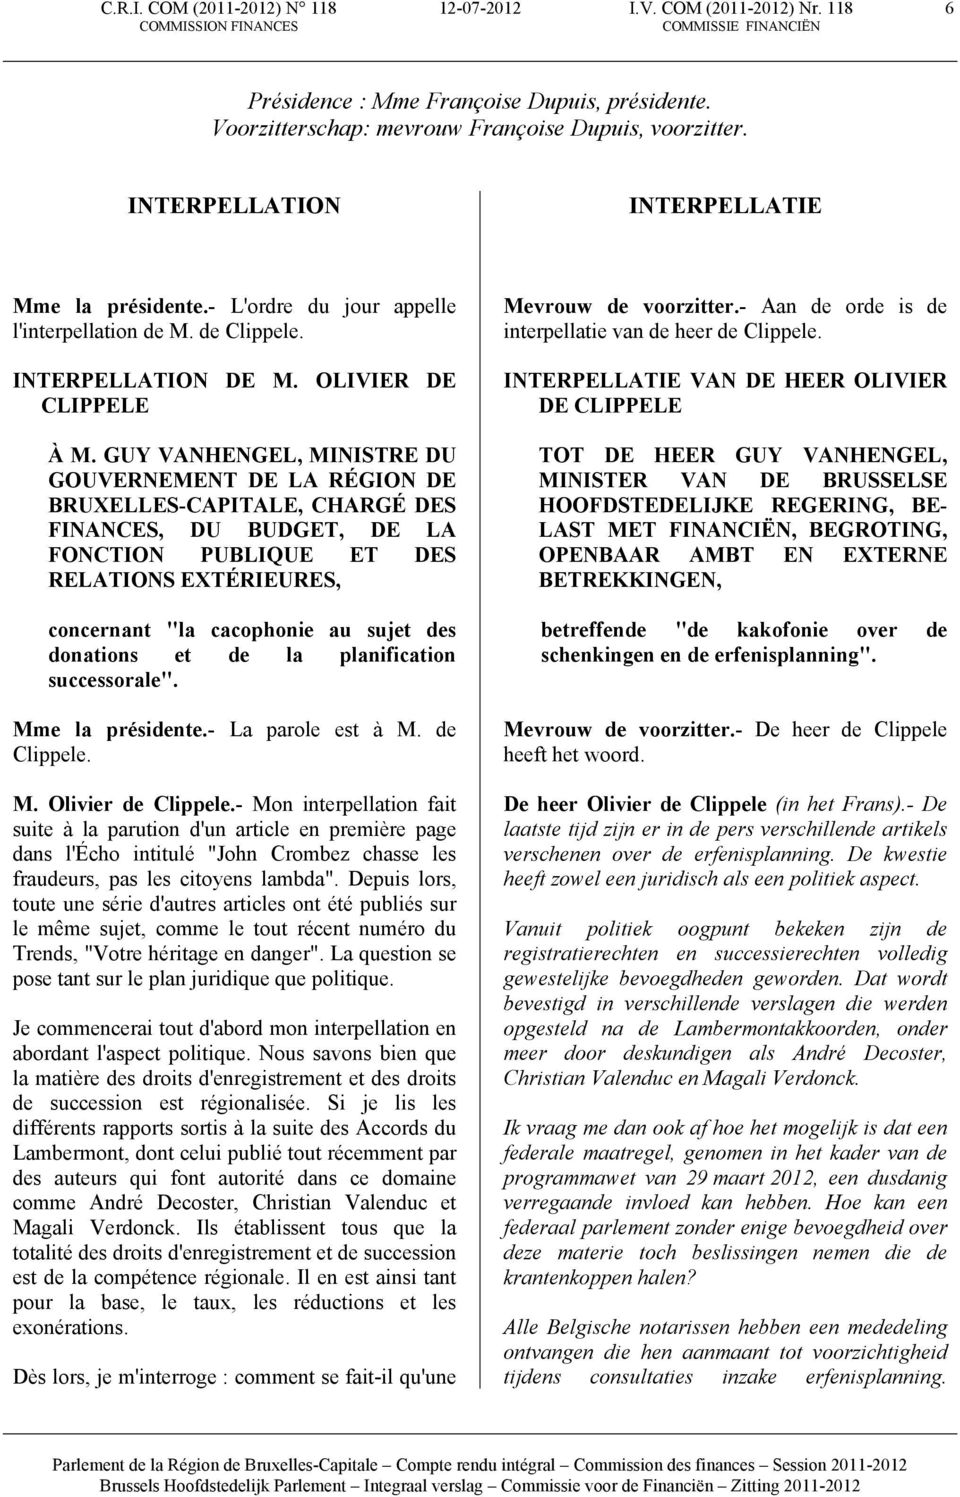 GUY VANHENGEL, MINISTRE DU GOUVERNEMENT DE LA RÉGION DE BRUXELLES-CAPITALE, CHARGÉ DES FINANCES, DU BUDGET, DE LA FONCTION PUBLIQUE ET DES RELATIONS EXTÉRIEURES, concernant "la cacophonie au sujet